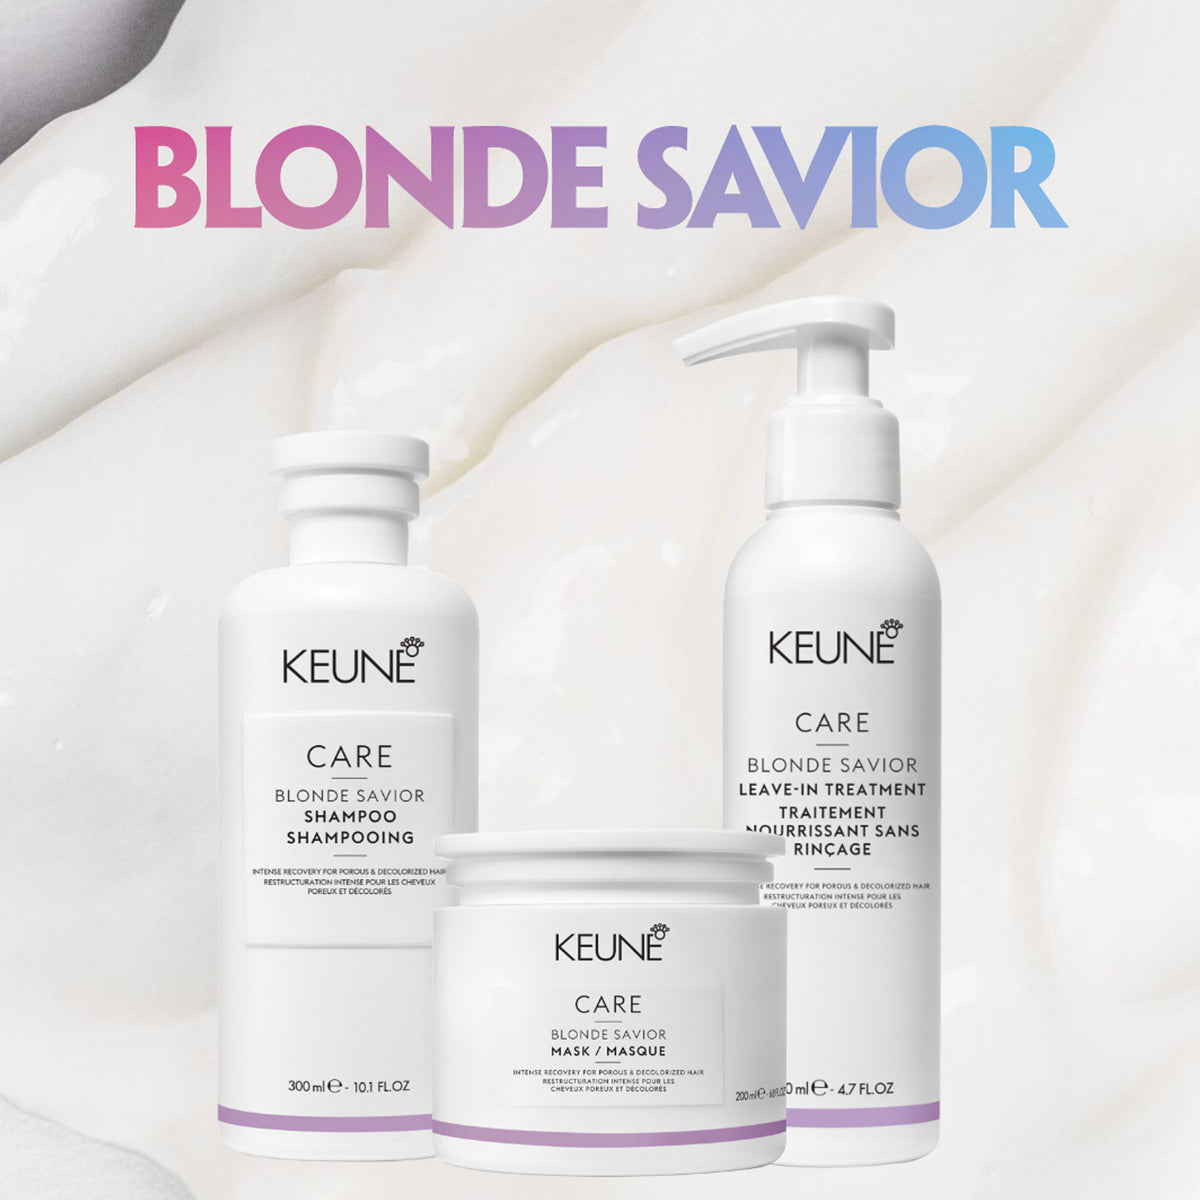 Keune Care Blonde Saviour Leave-In Treatment Cream 140ml